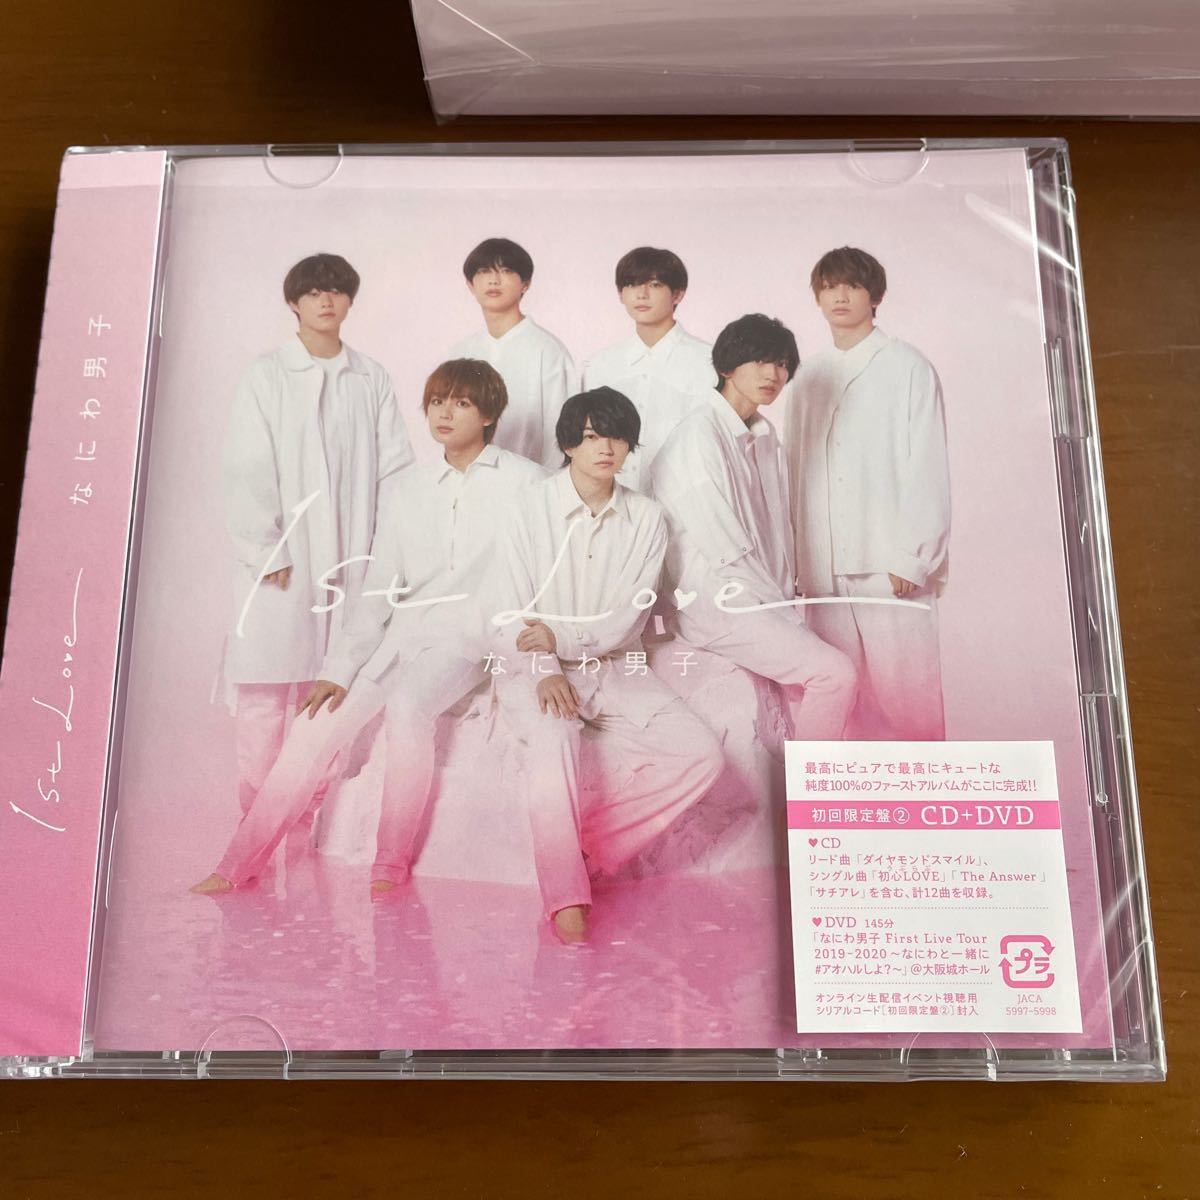 なにわ男子 1st Love CD DVD 3形態 bakemartgourmet.com